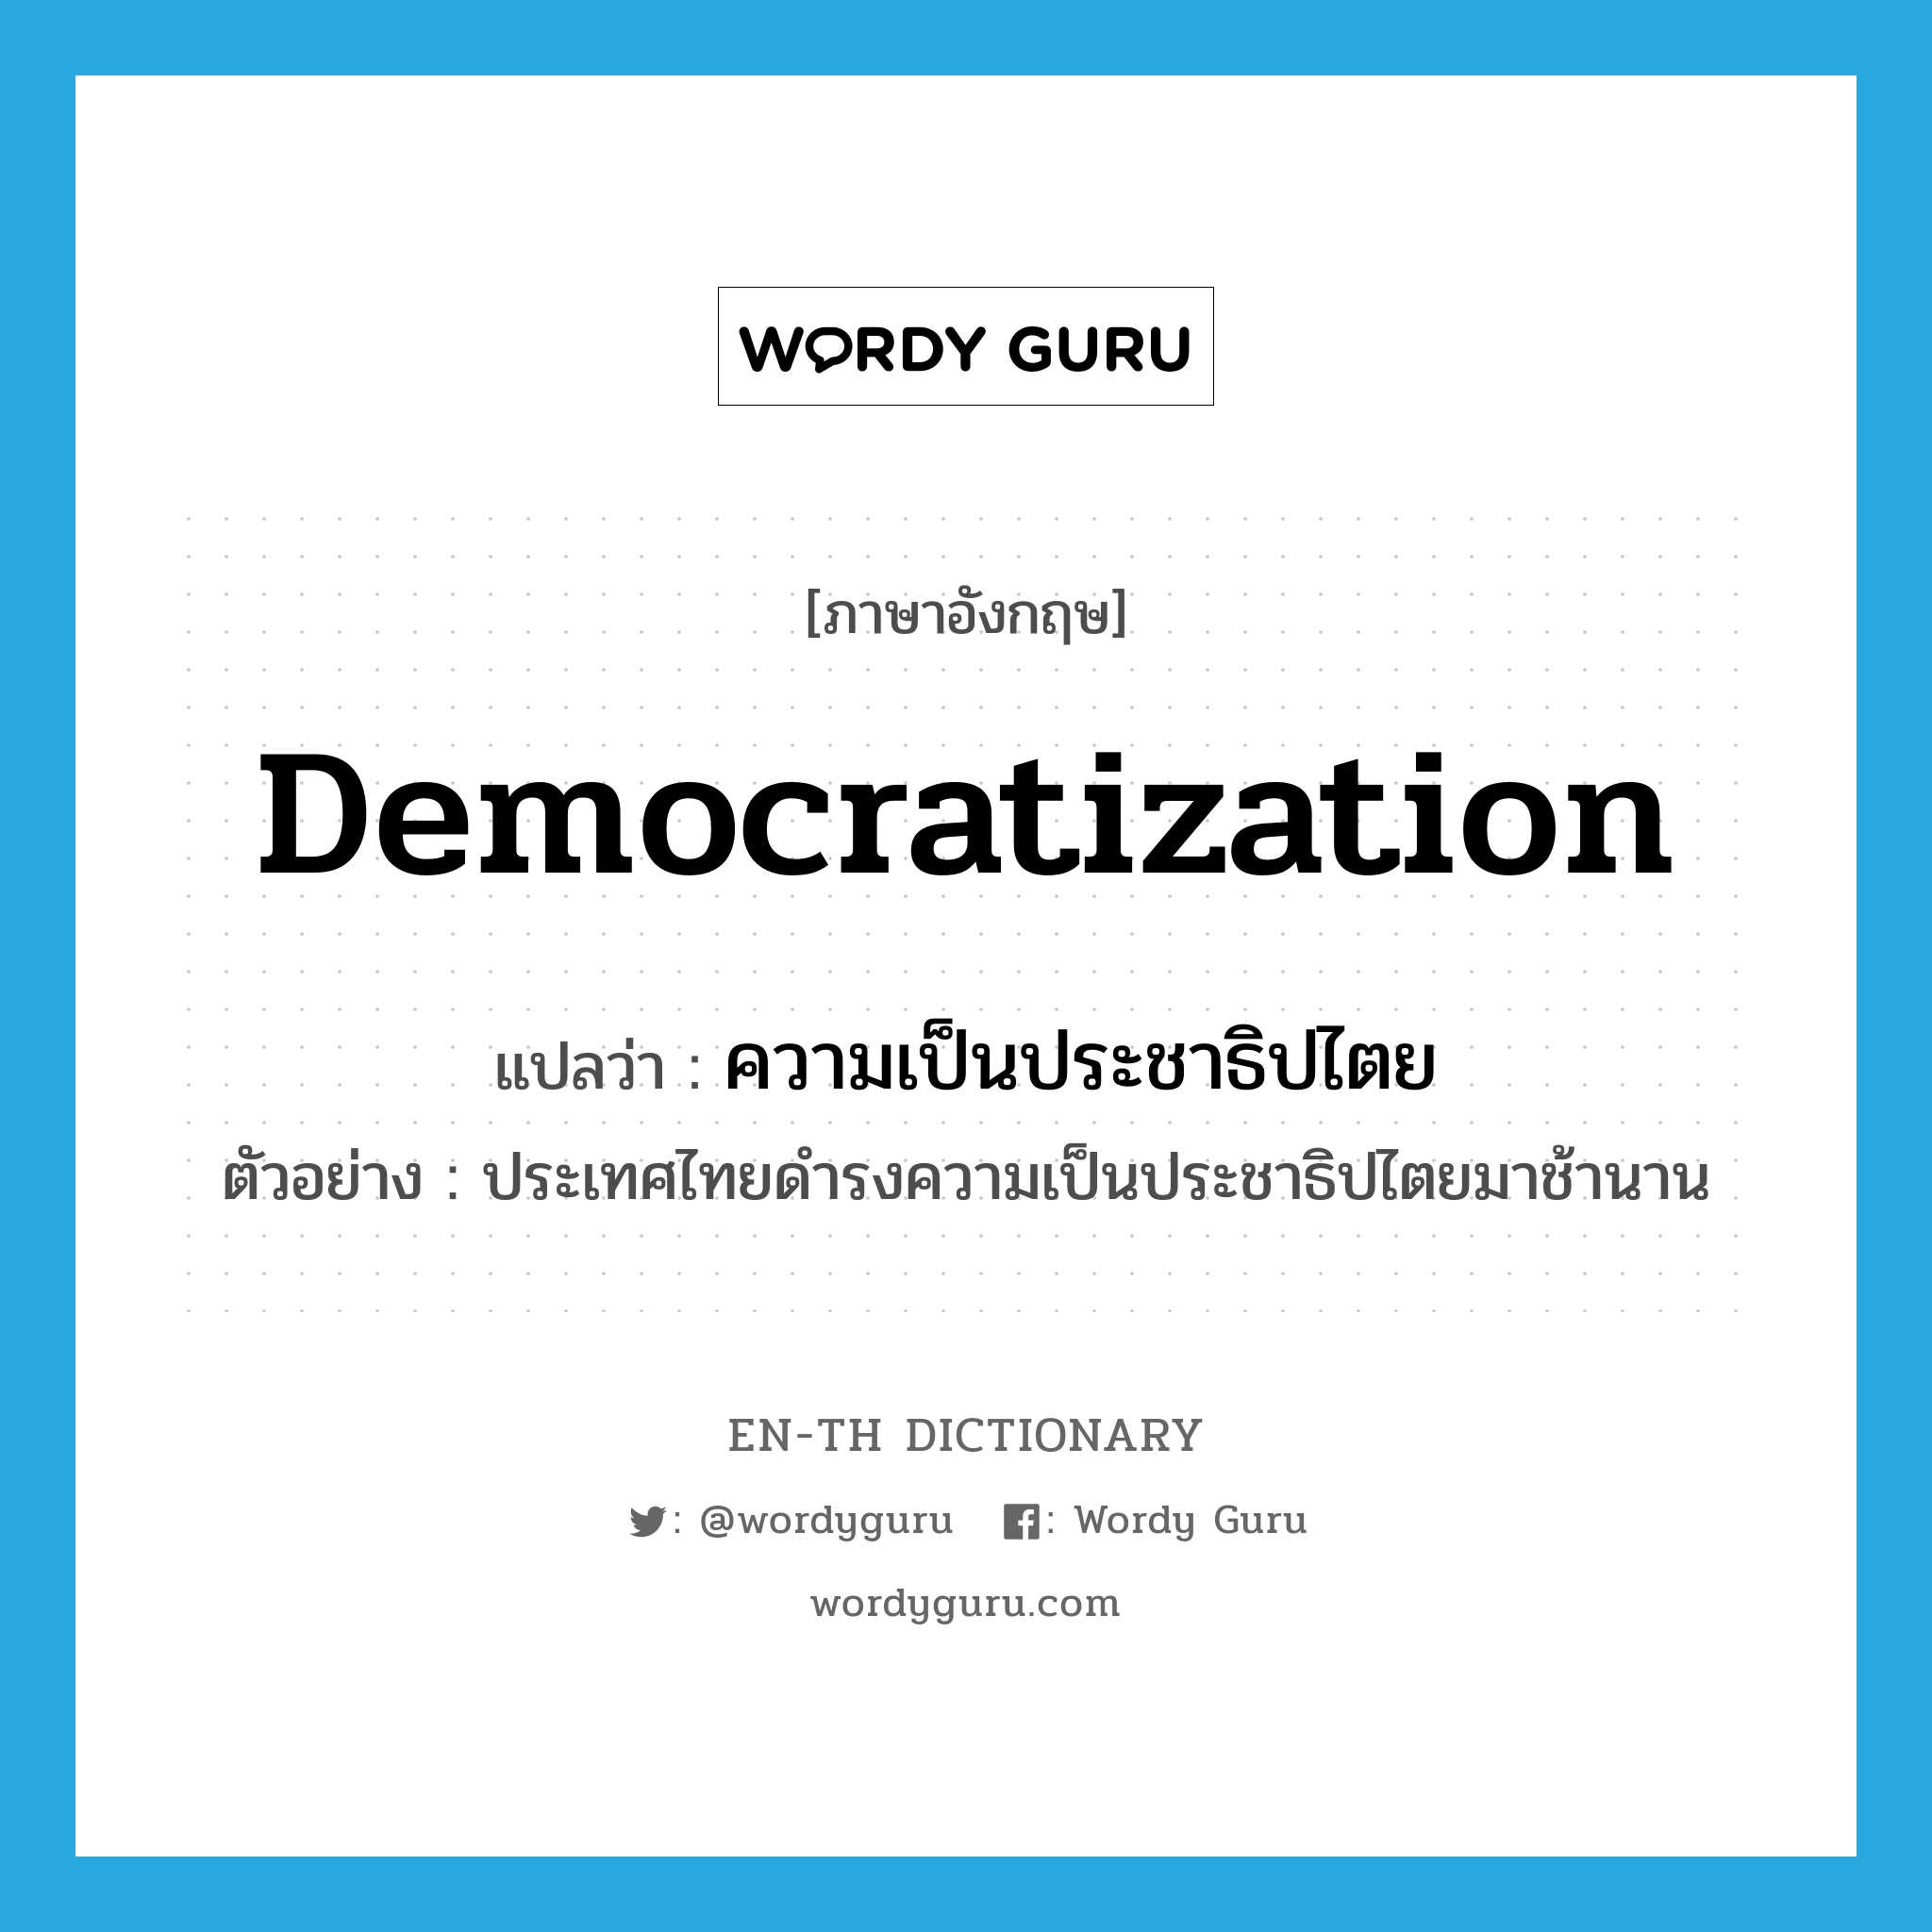 ความเป็นประชาธิปไตย ภาษาอังกฤษ?, คำศัพท์ภาษาอังกฤษ ความเป็นประชาธิปไตย แปลว่า democratization ประเภท N ตัวอย่าง ประเทศไทยดำรงความเป็นประชาธิปไตยมาช้านาน หมวด N